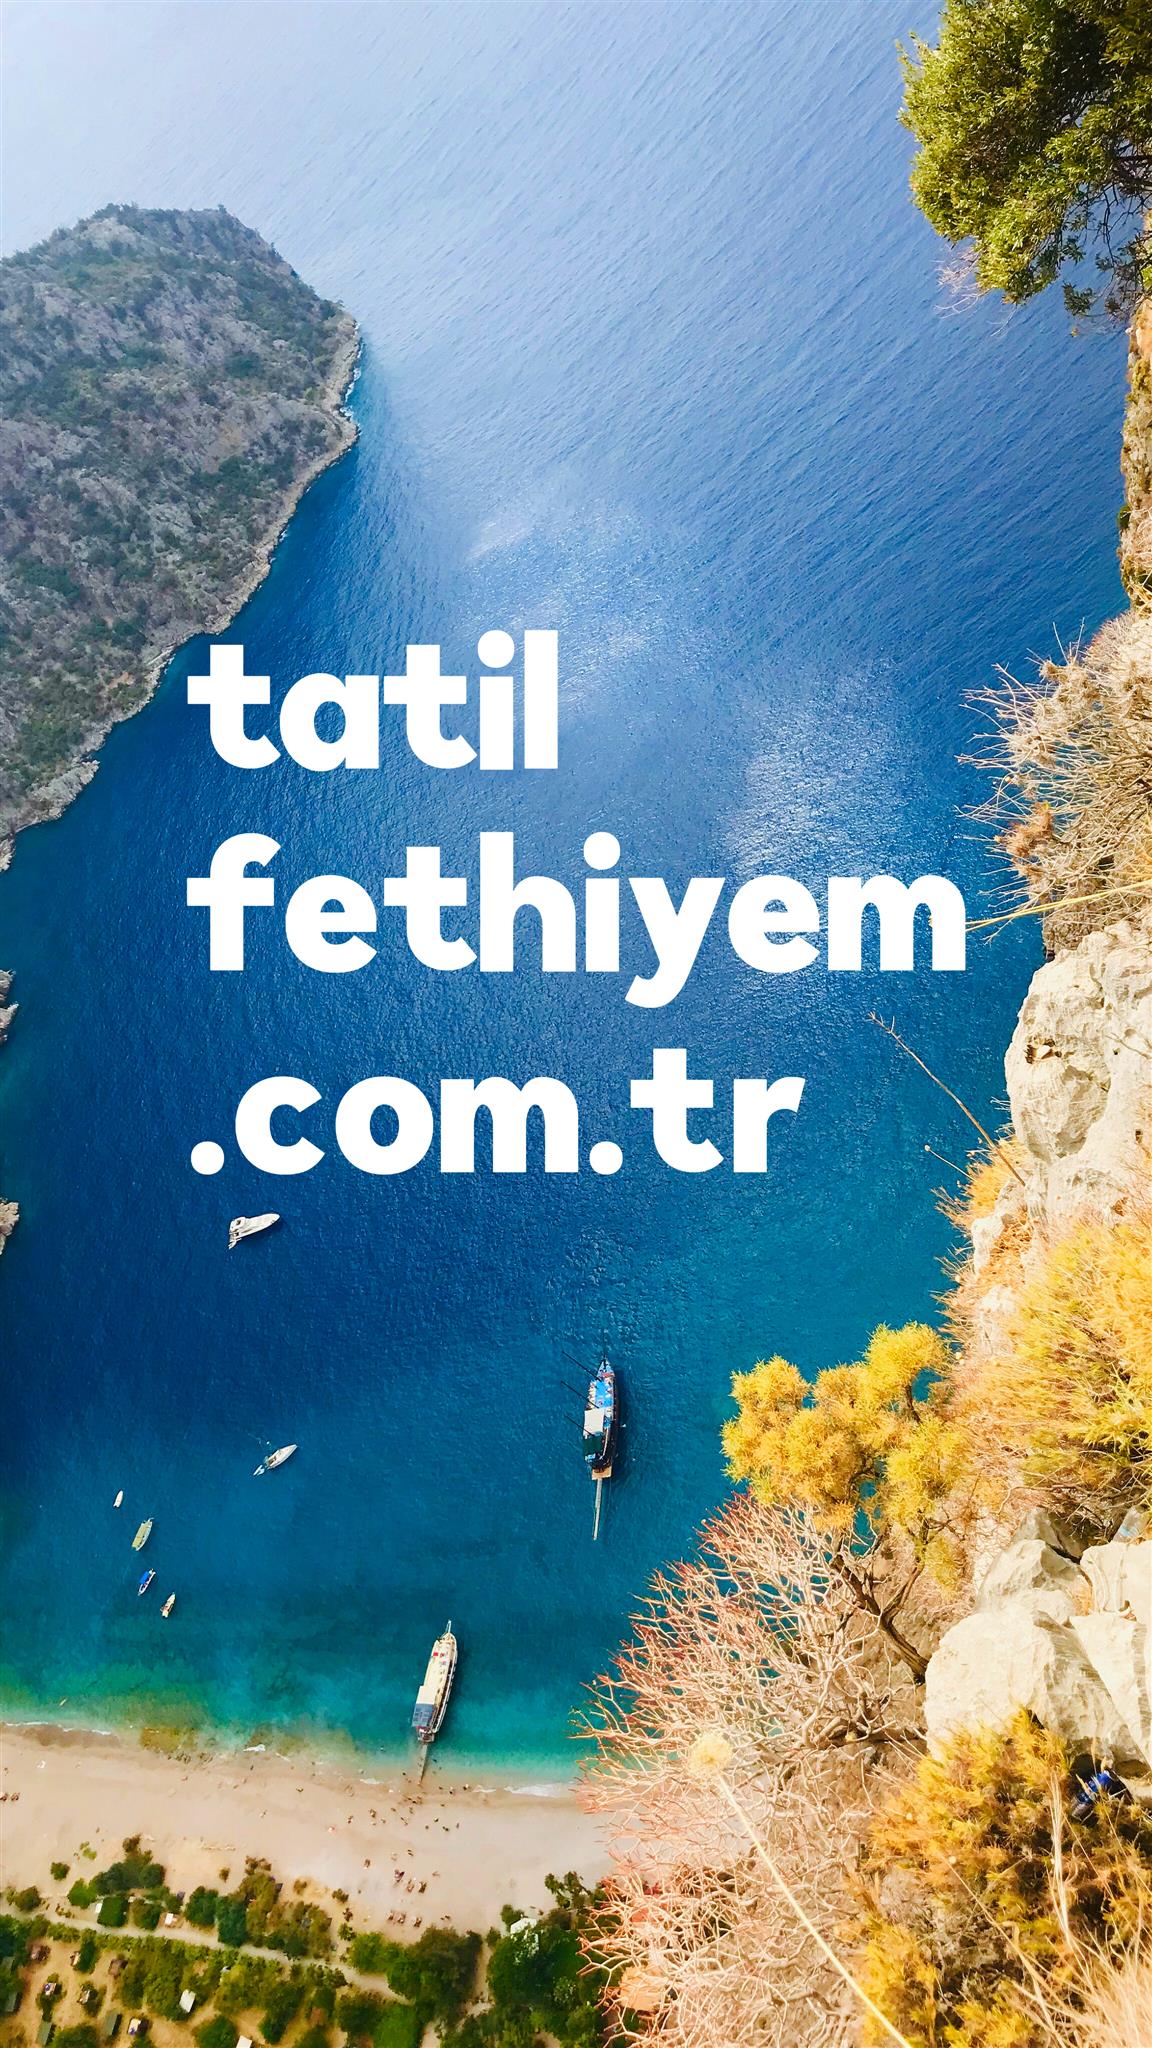 tatilfethiyem.com.tr